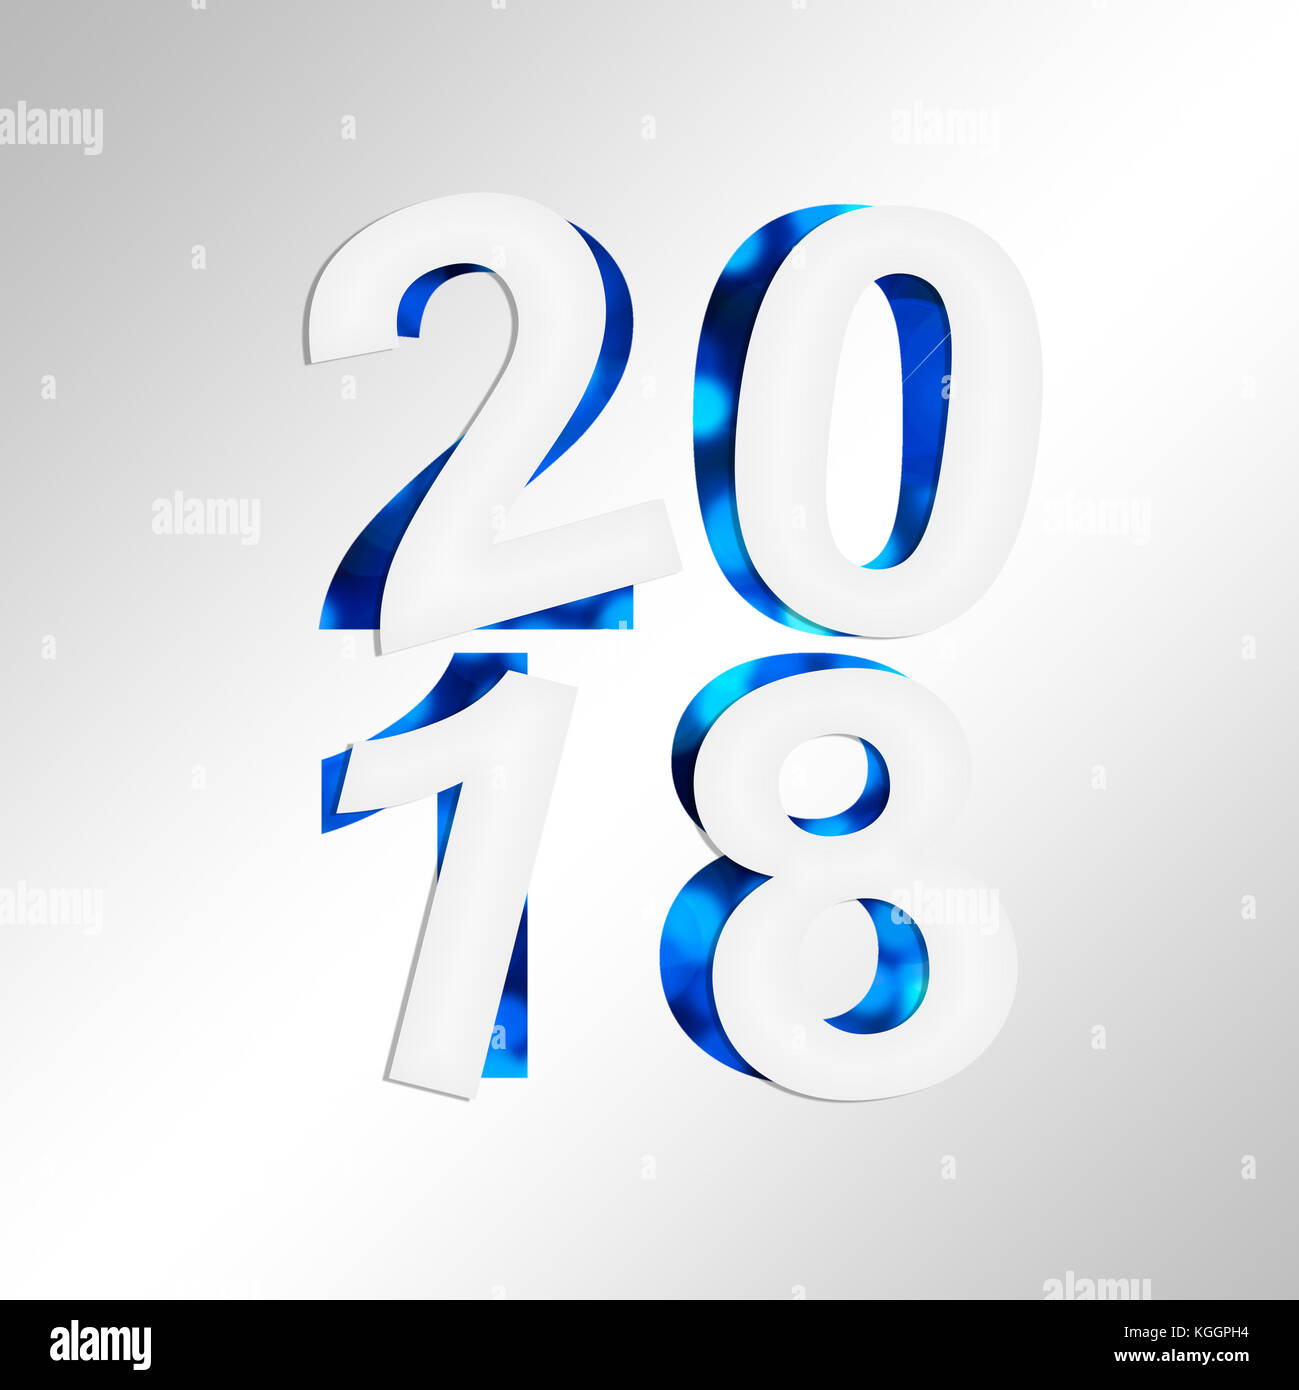 2018 square carte de souhaits avec du papier coupé et fond brillant Banque D'Images